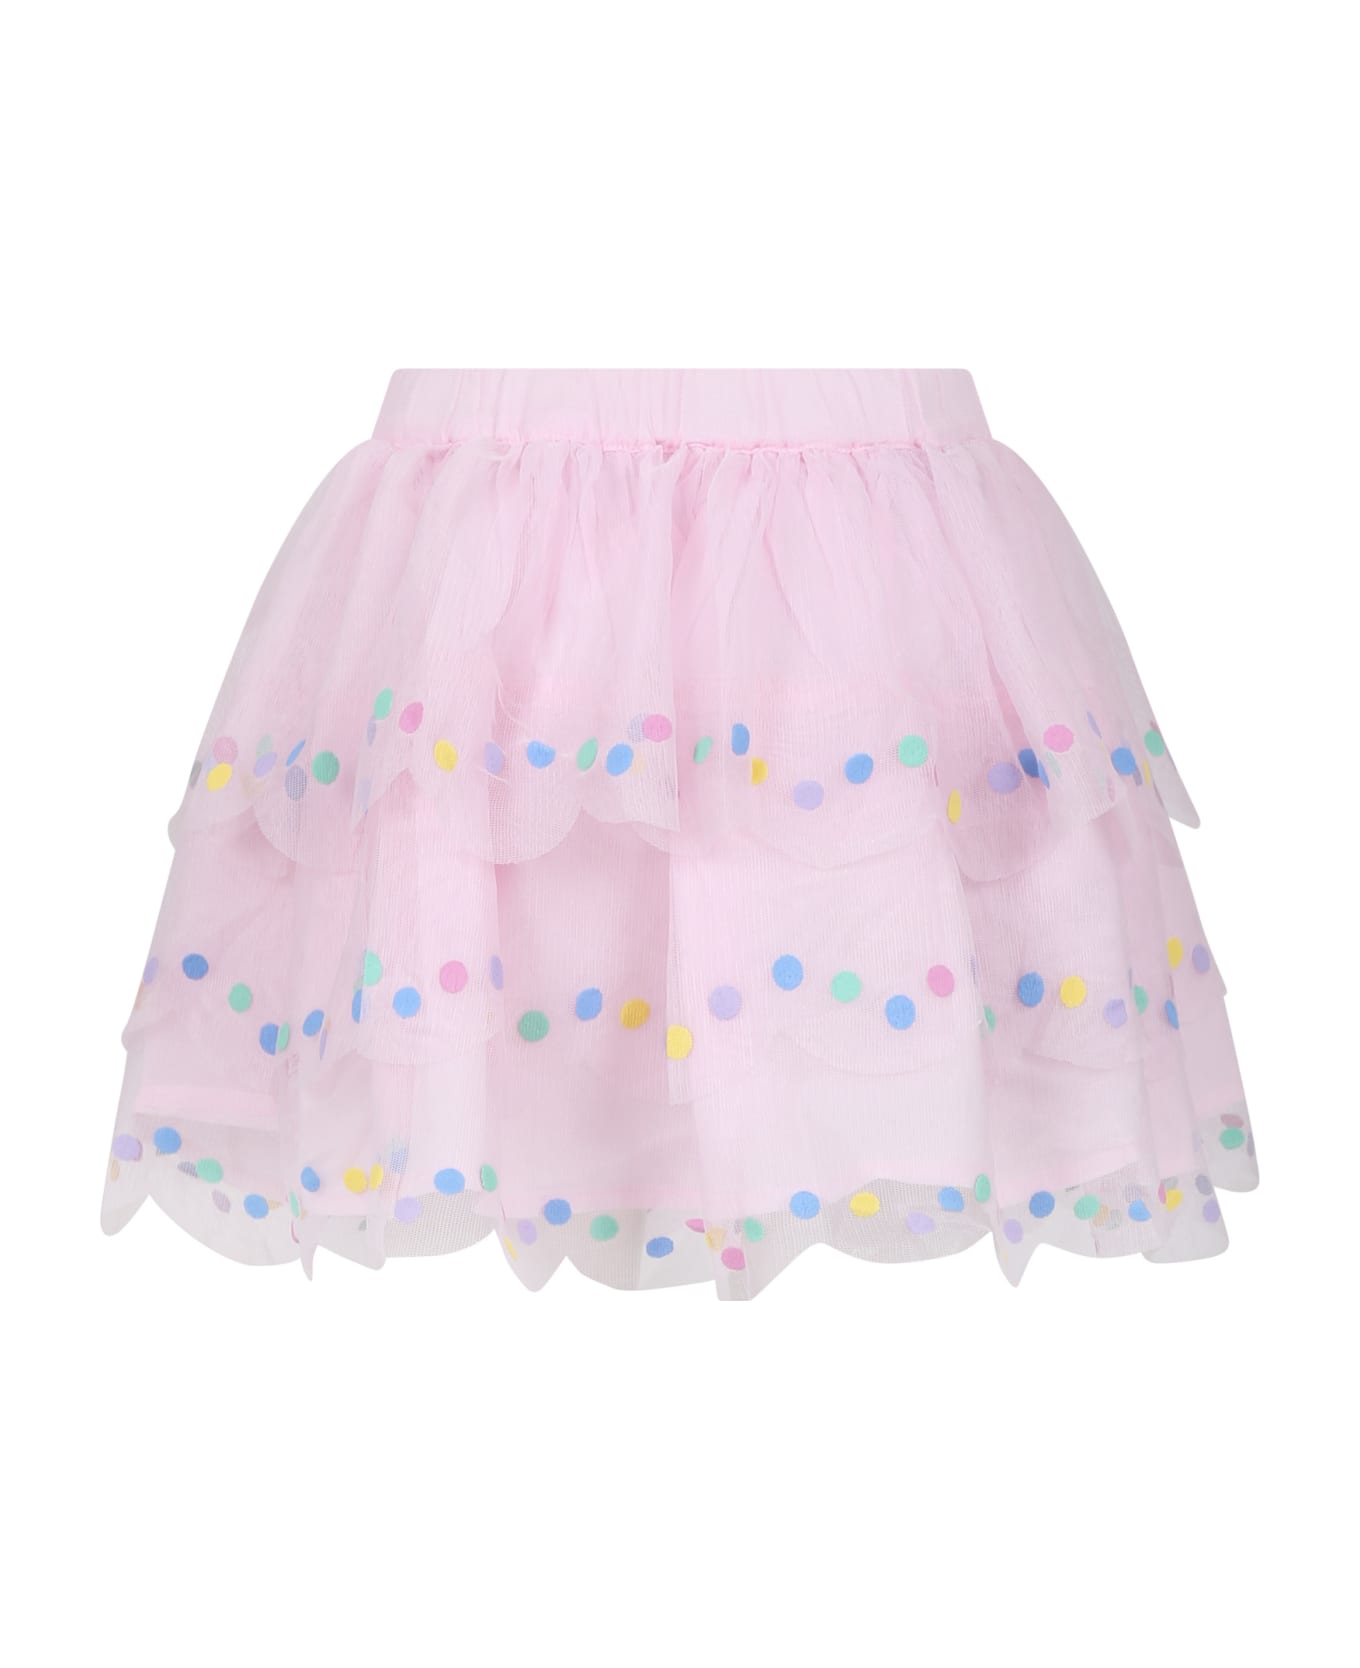 Stella McCartney Kids Pink Tulle Skirt For Girl